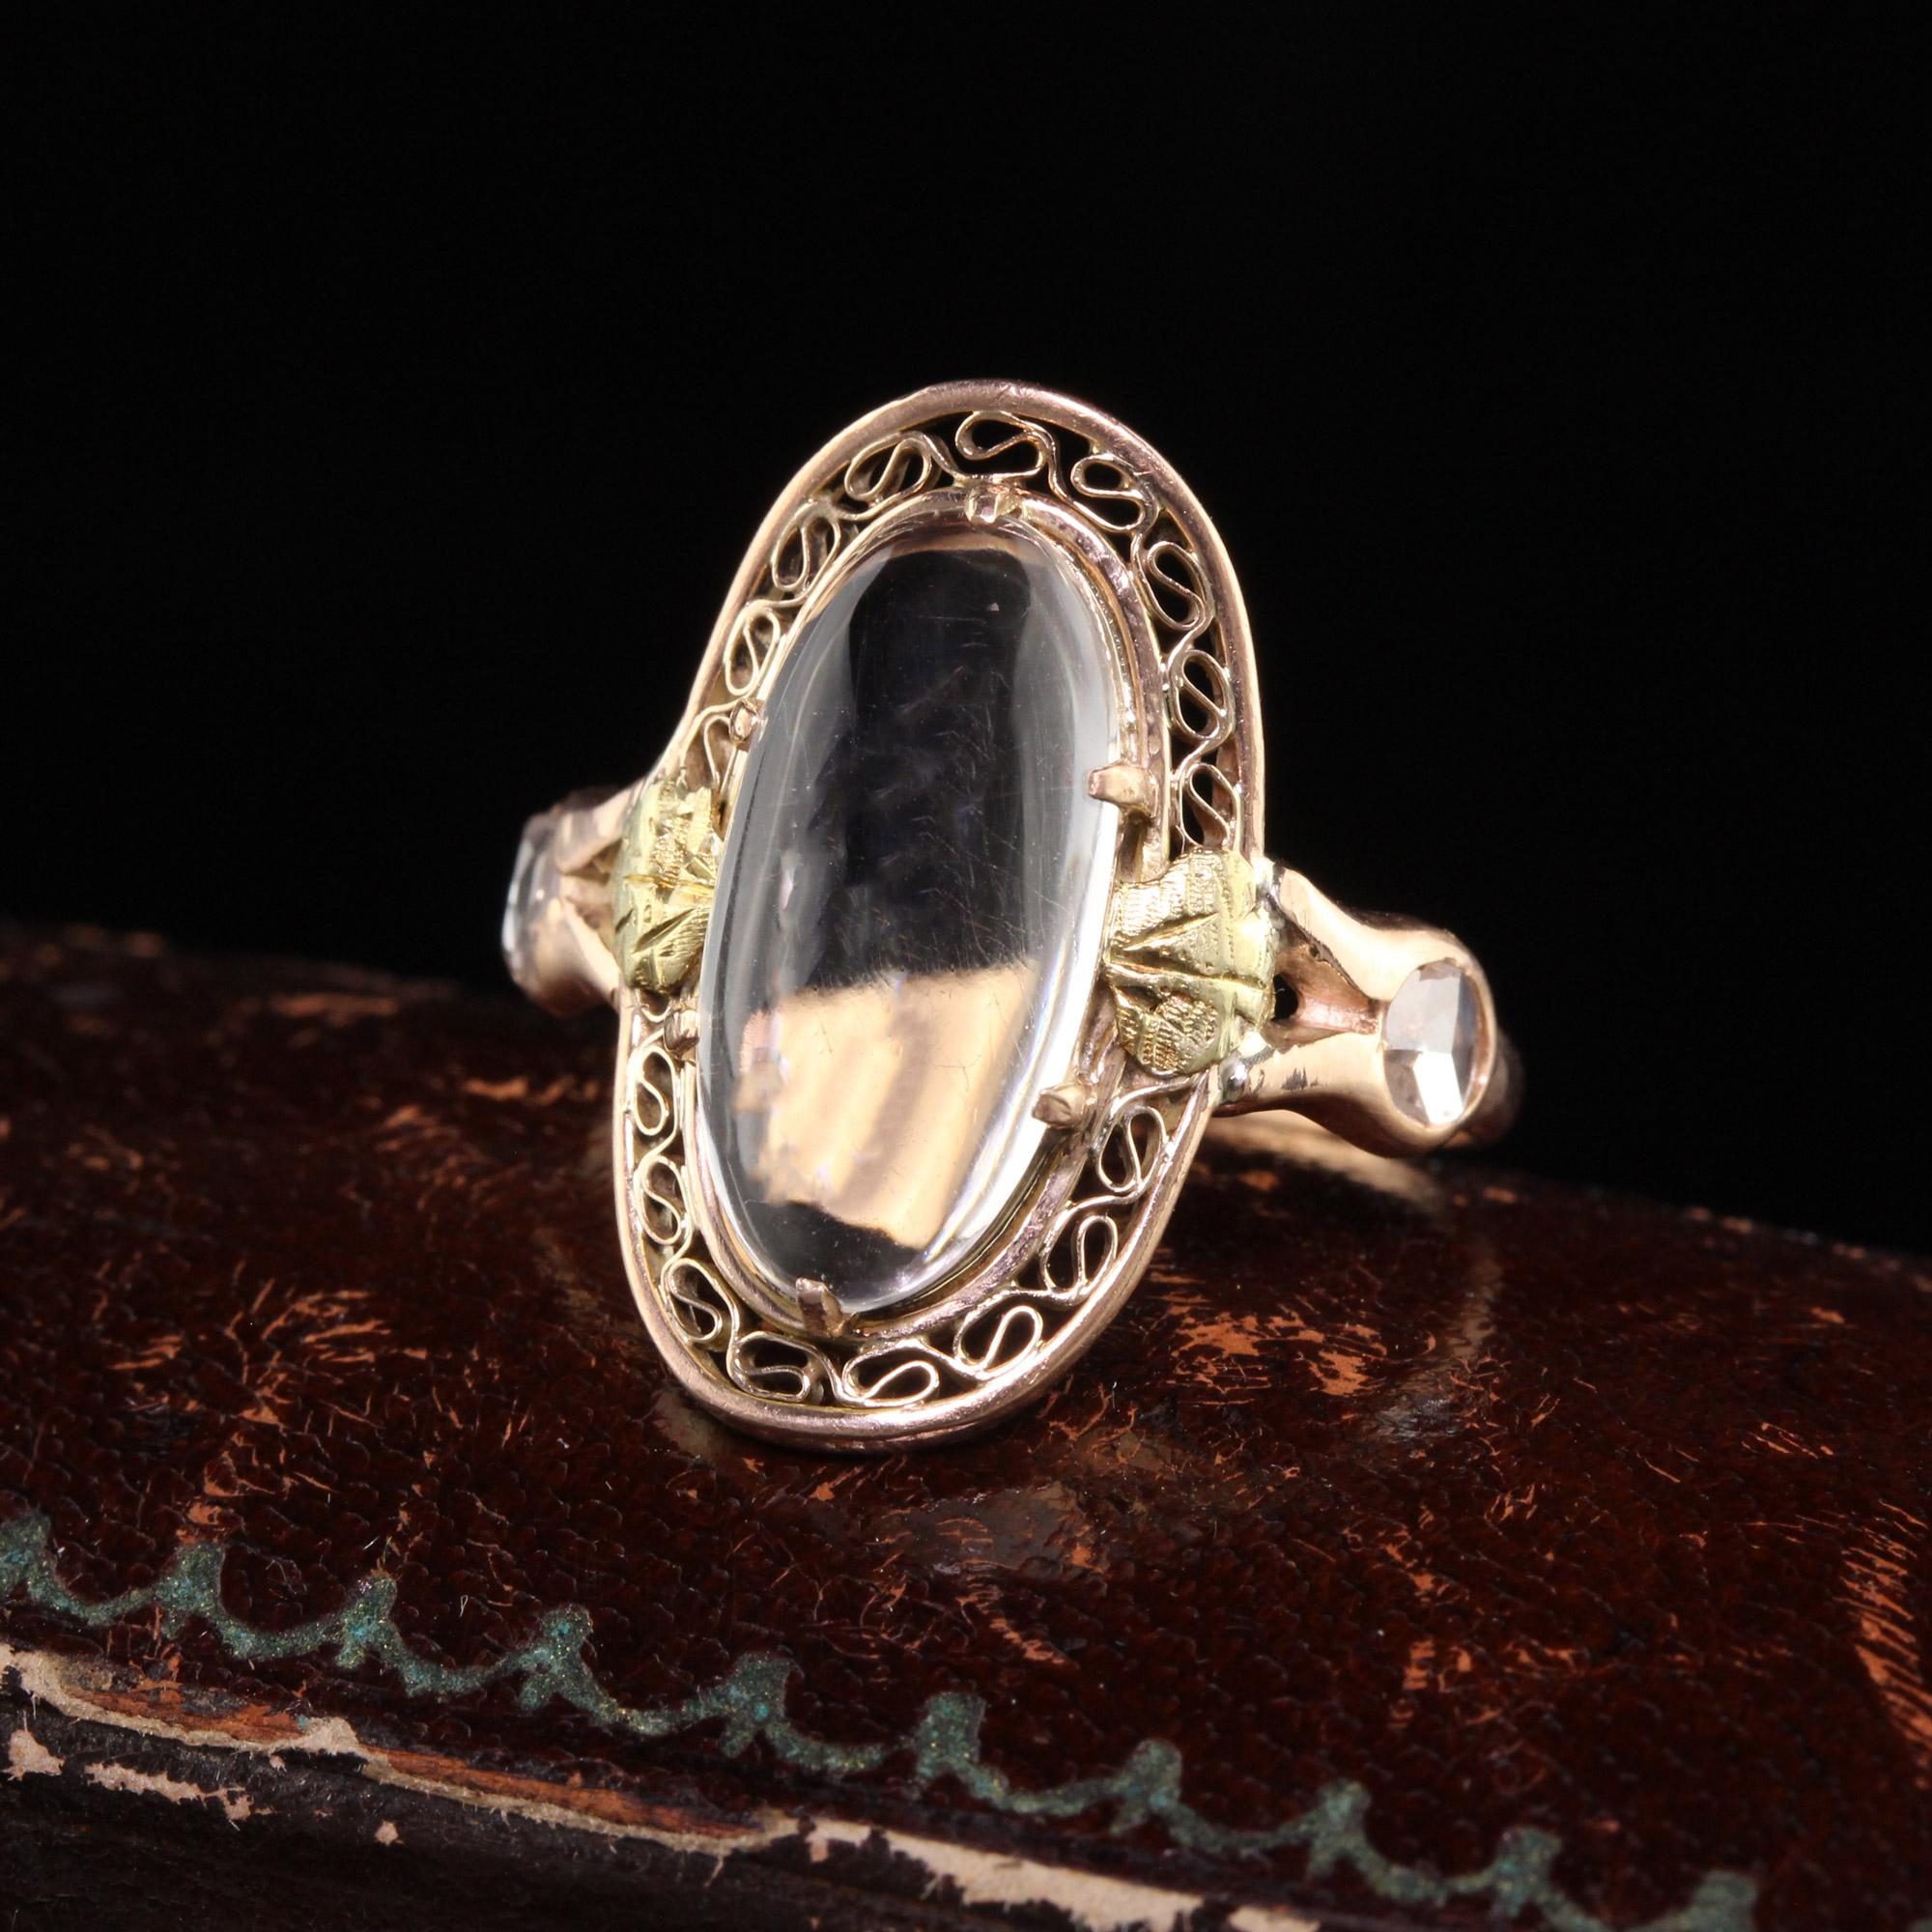 Schöne antike viktorianische 10K Rose Gold und Gelbgold Mondstein Rose Cut Diamond Ring. Dieser wunderschöne Ring ist aus 10 Karat Roségold mit Akzenten aus Gelbgold gefertigt. Der Ring hat einen schönen Mondstein auf der Oberseite mit zwei weißen